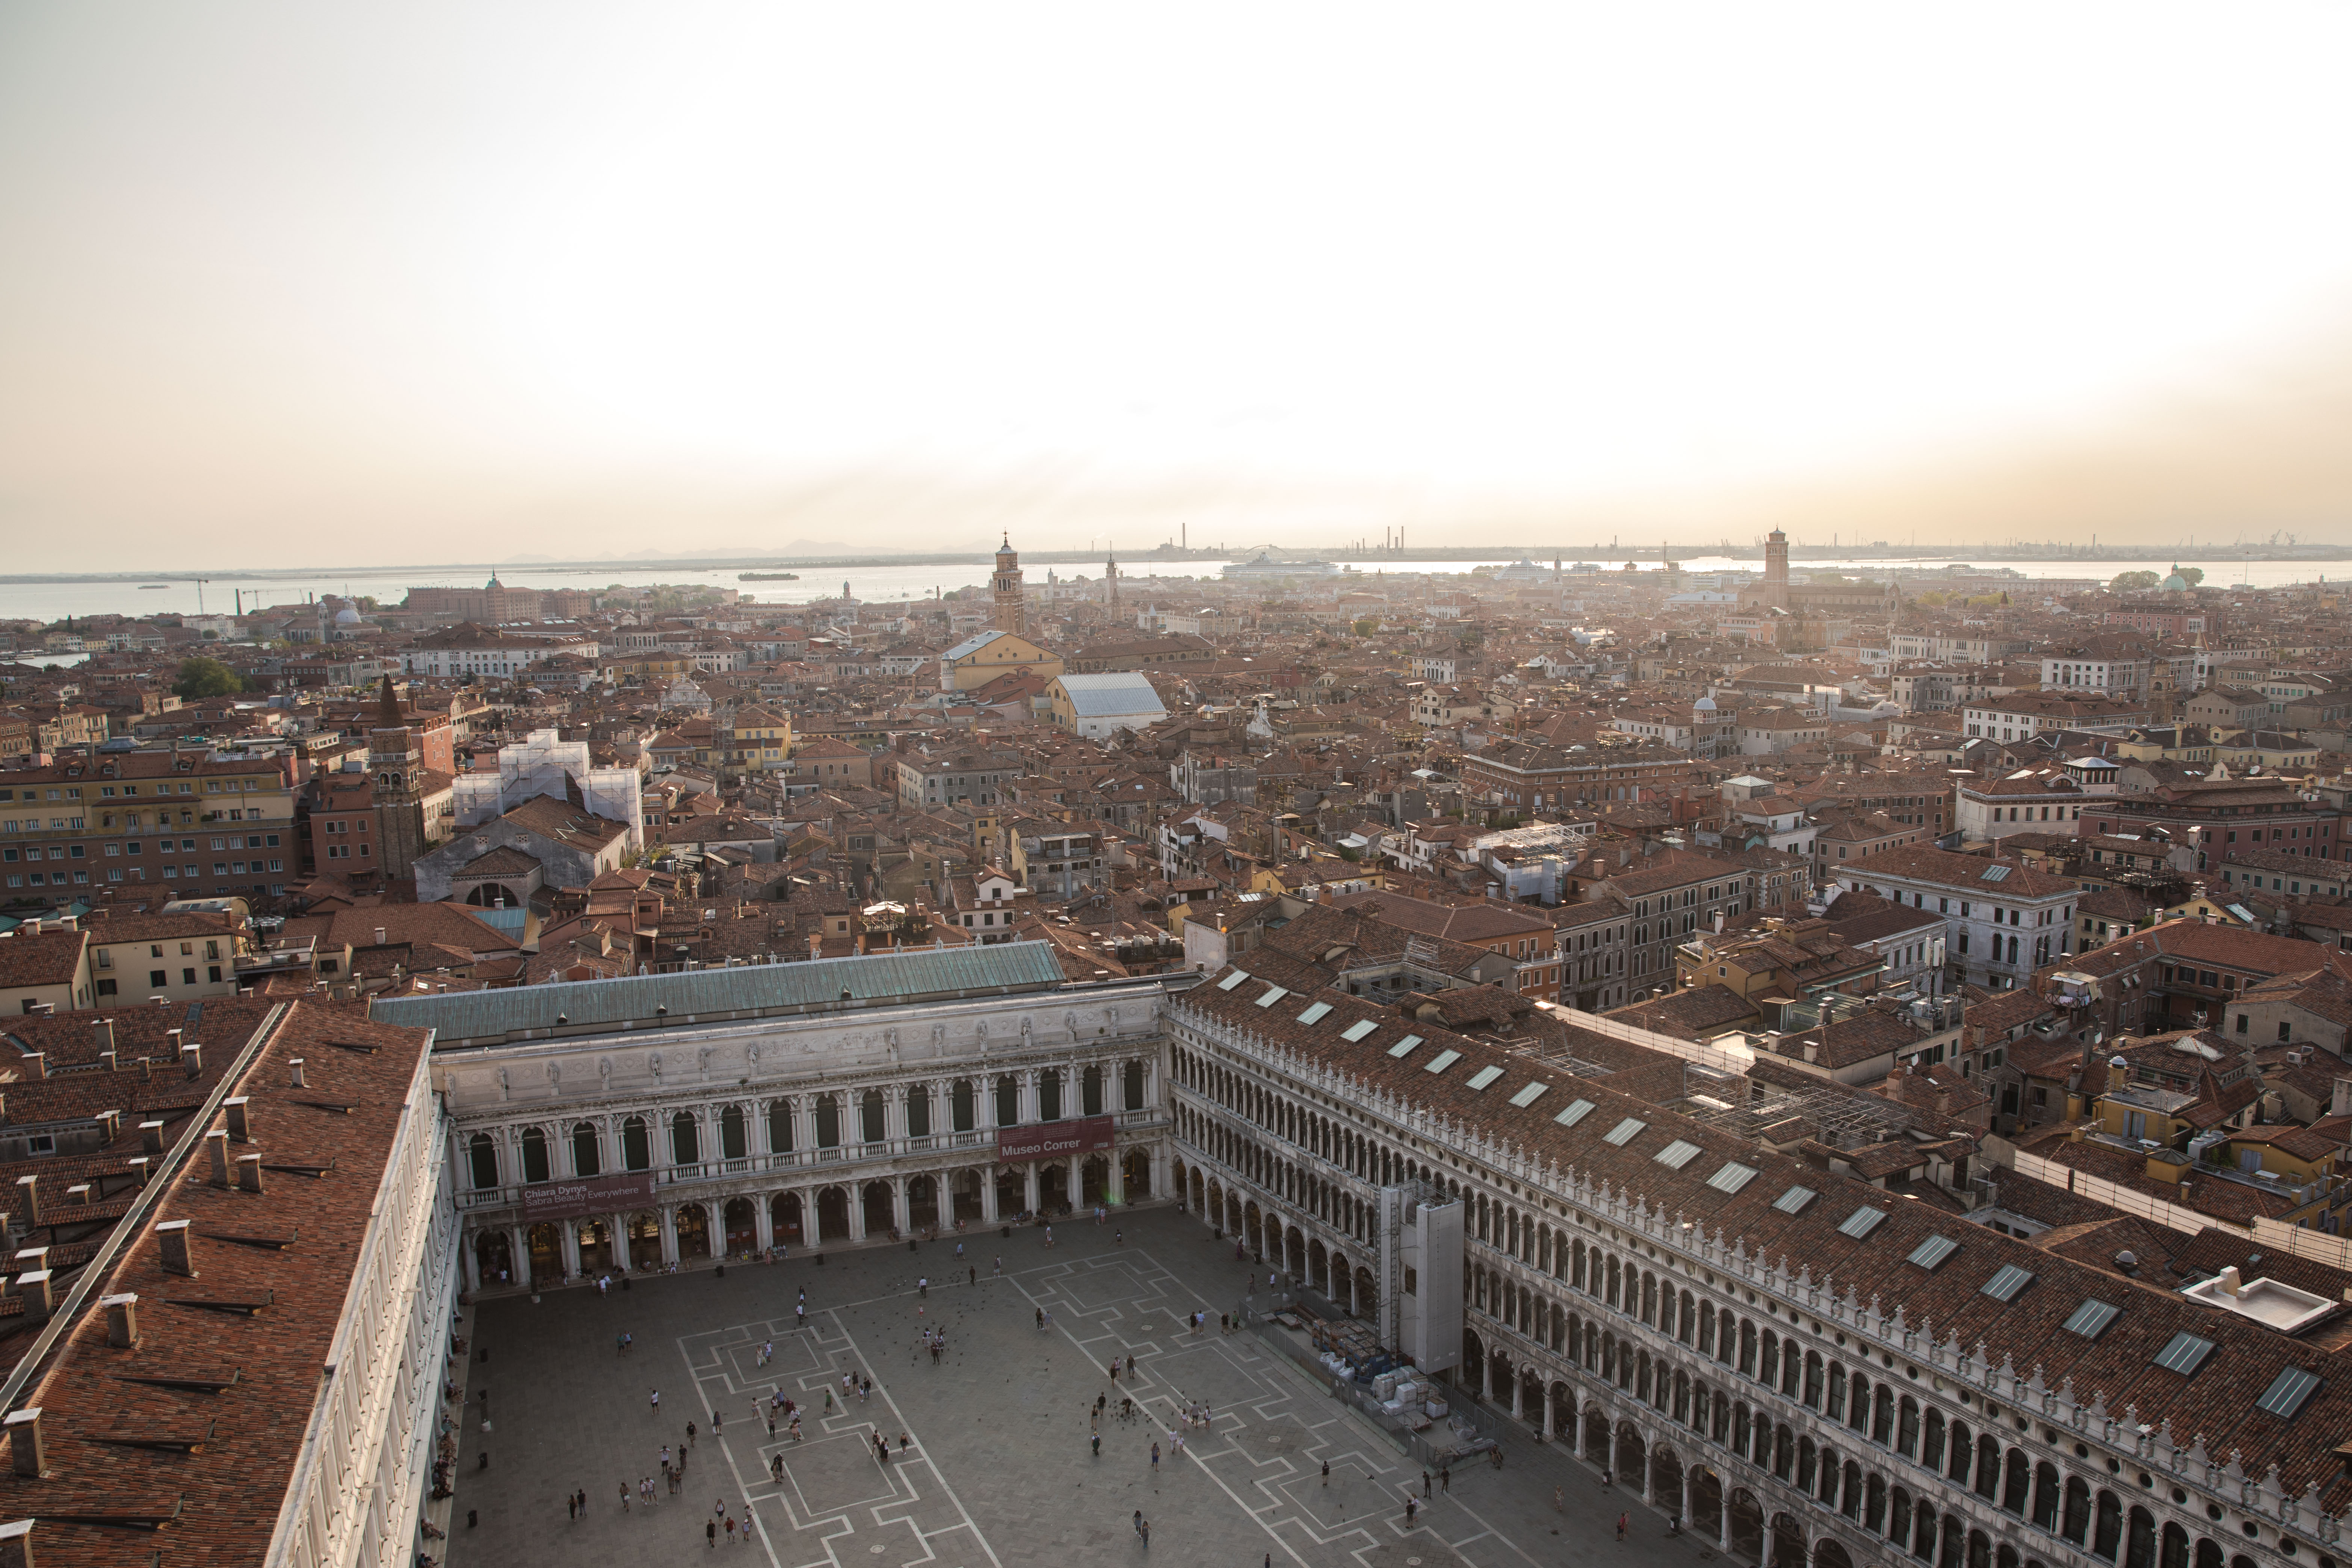 St. Mark's Square, Venice